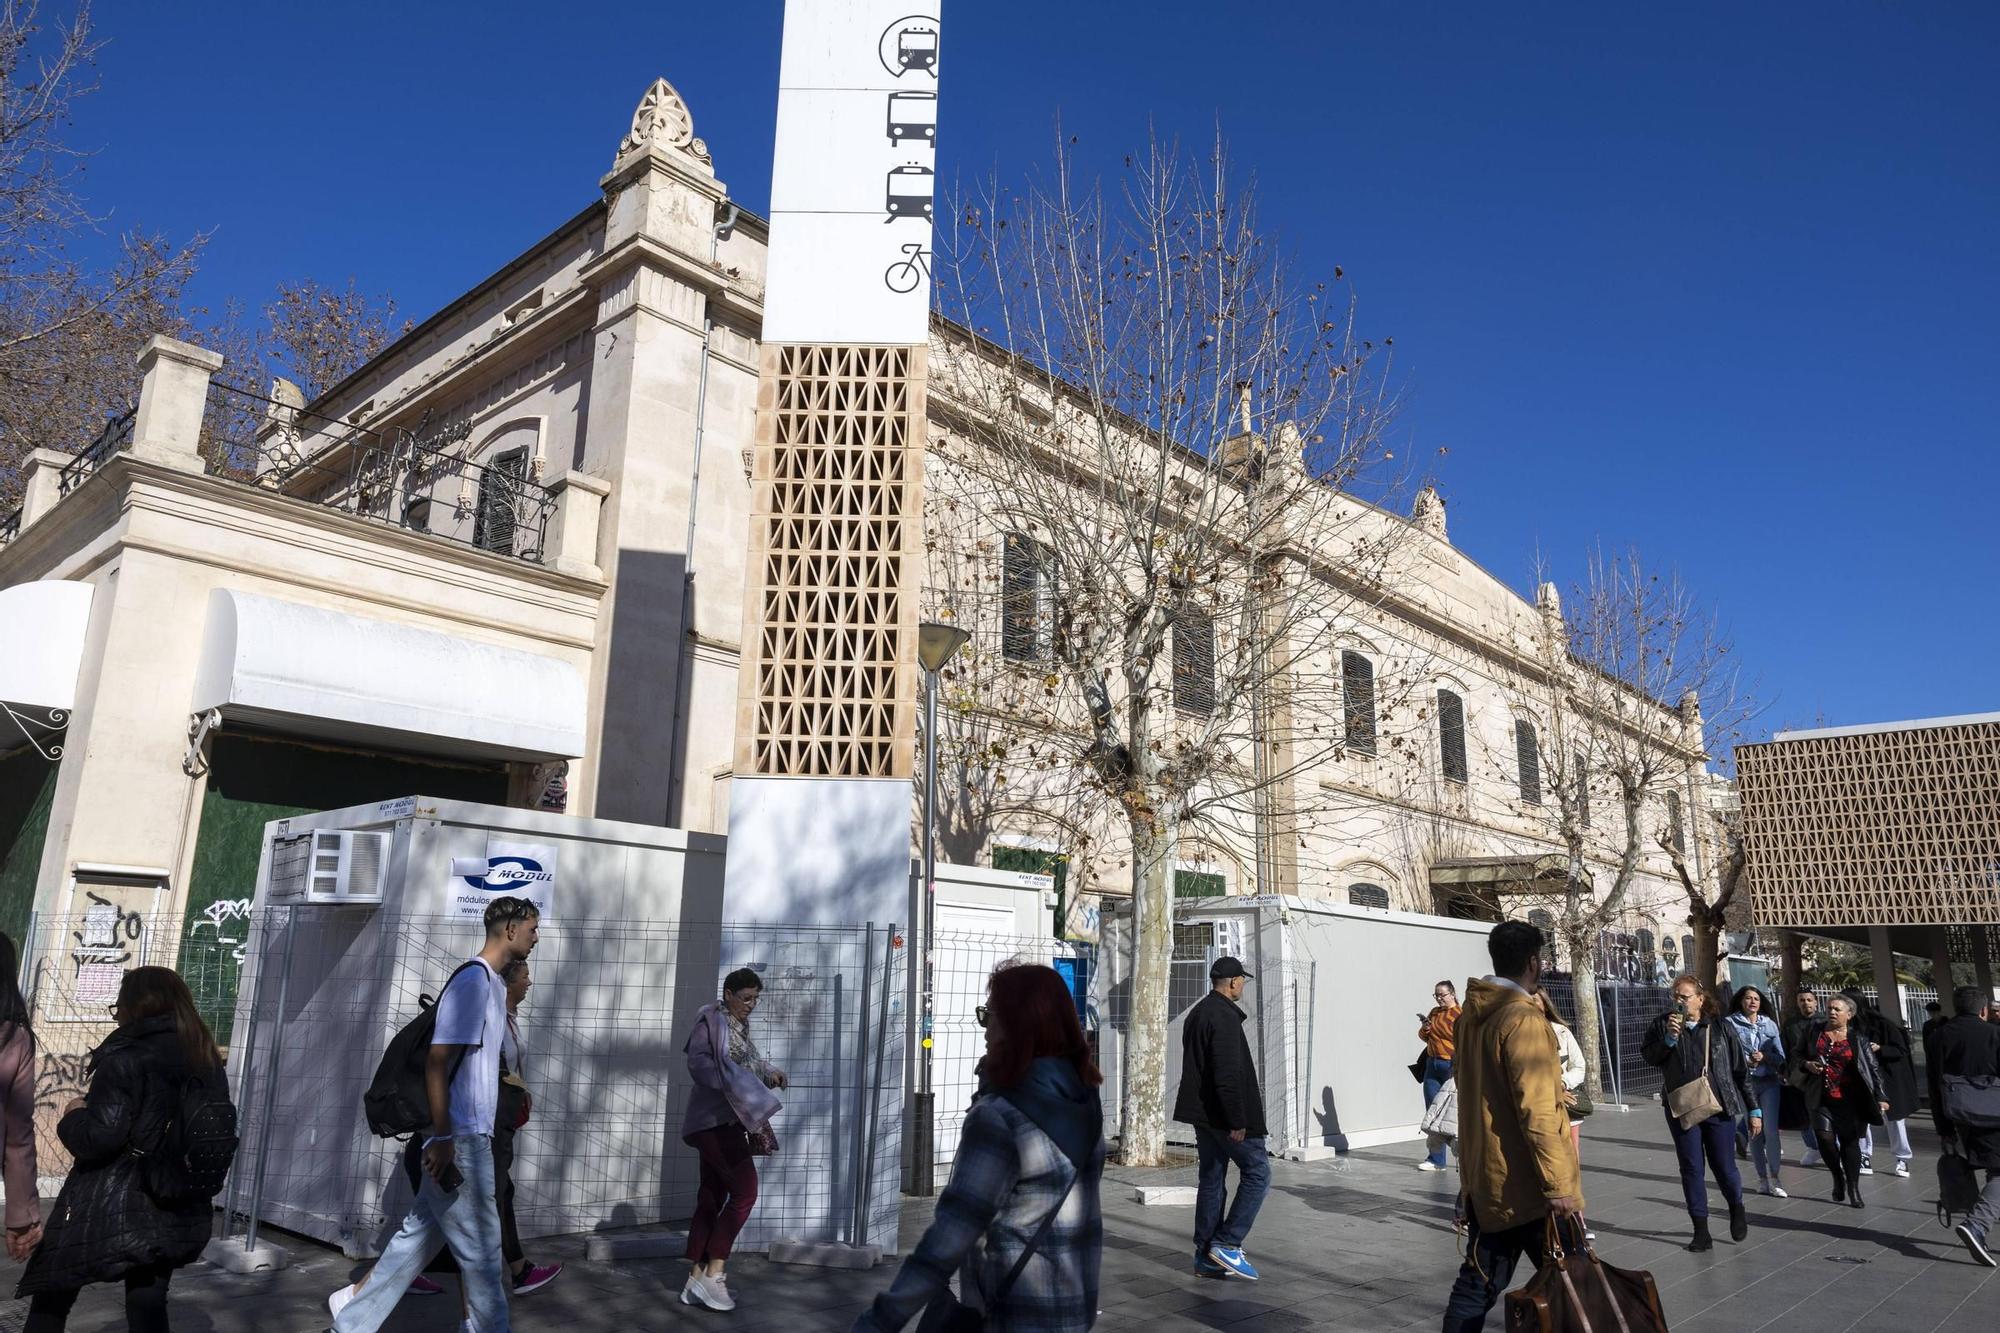 Hostal Terminus de Palma | Fotos: Empiezan las obras de reforma del emblemático edificio